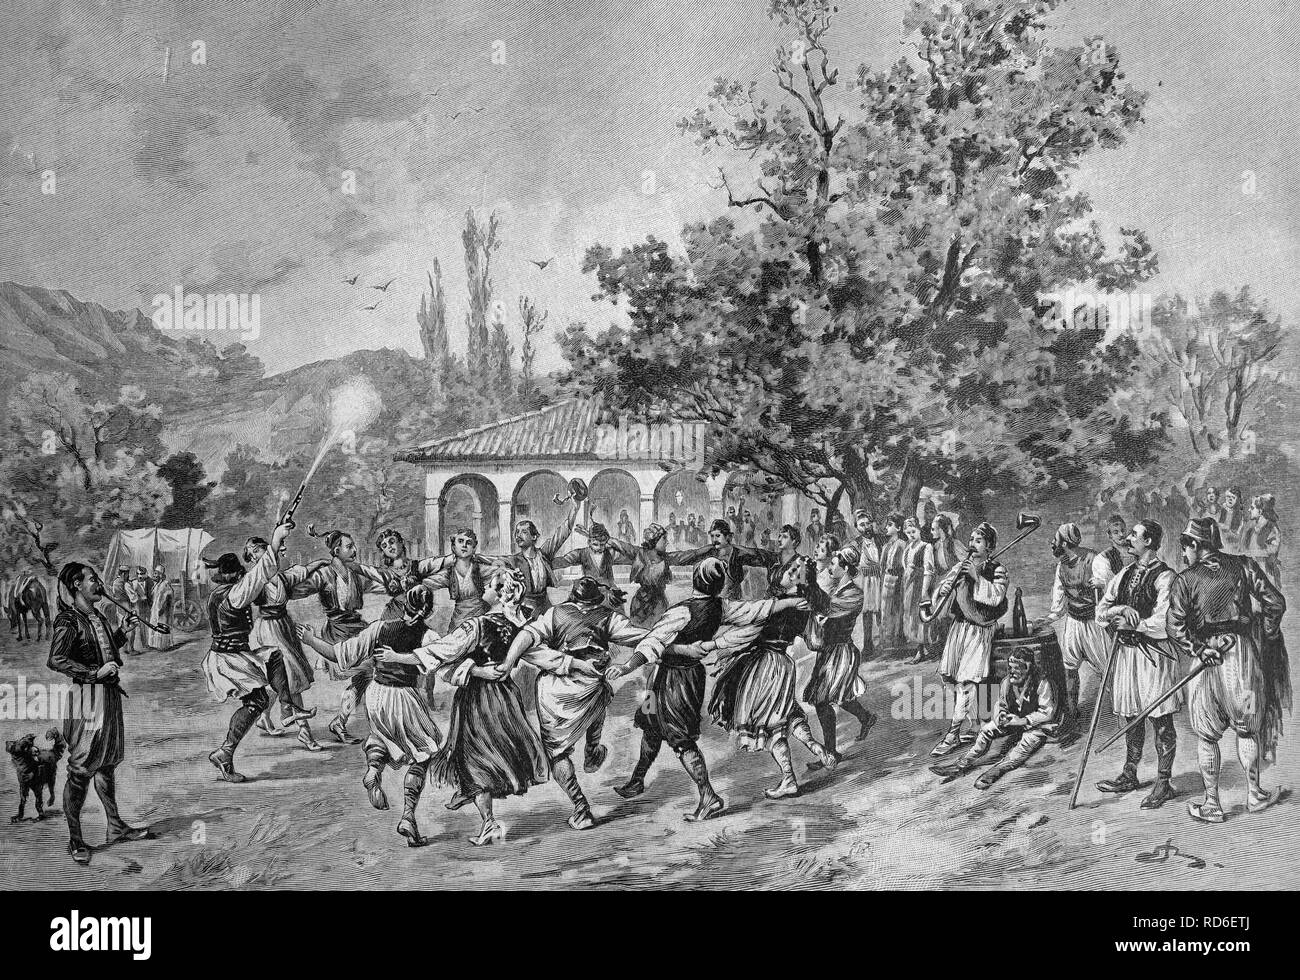 En face d'une partie village inn en Serbie, illustration historique vers 1893 Banque D'Images